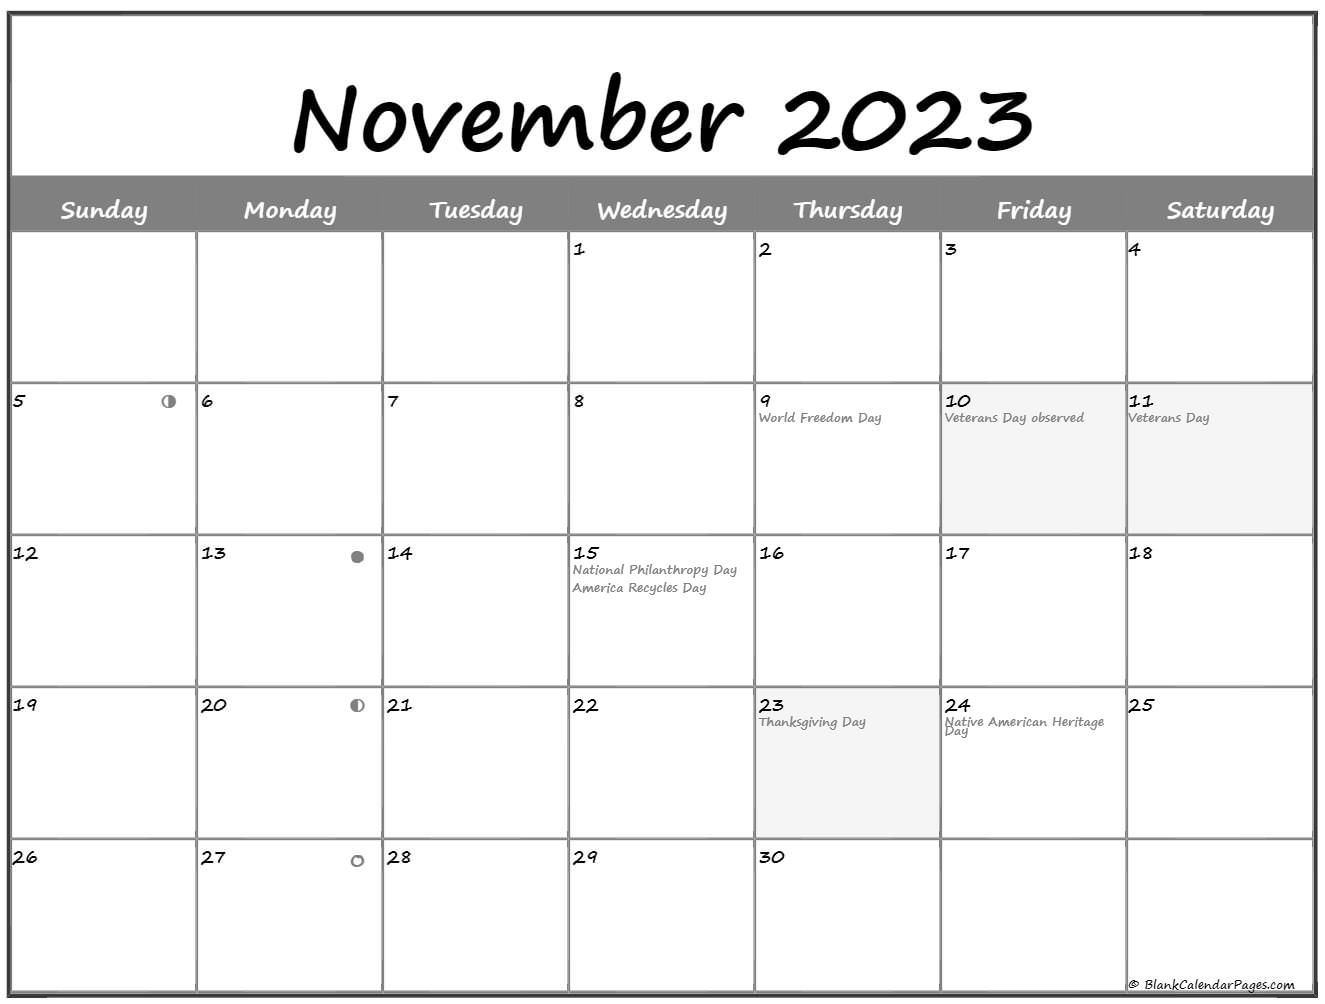 November 2023 Lunar Calendar | Moon Phase Calendar